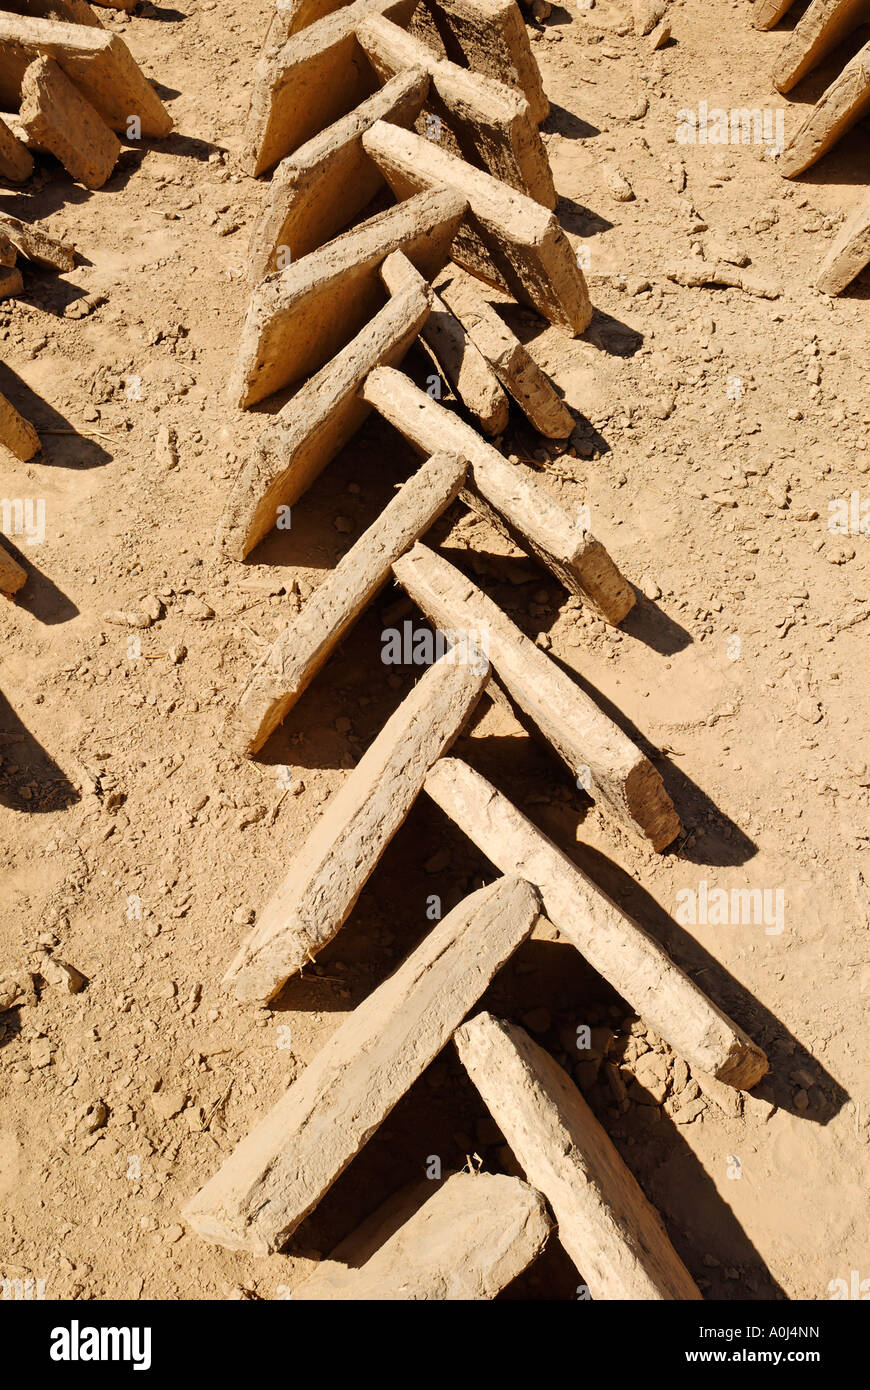 Mud brick production at Al Hajjaryn, Wadi Doan, Yemen Stock Photo